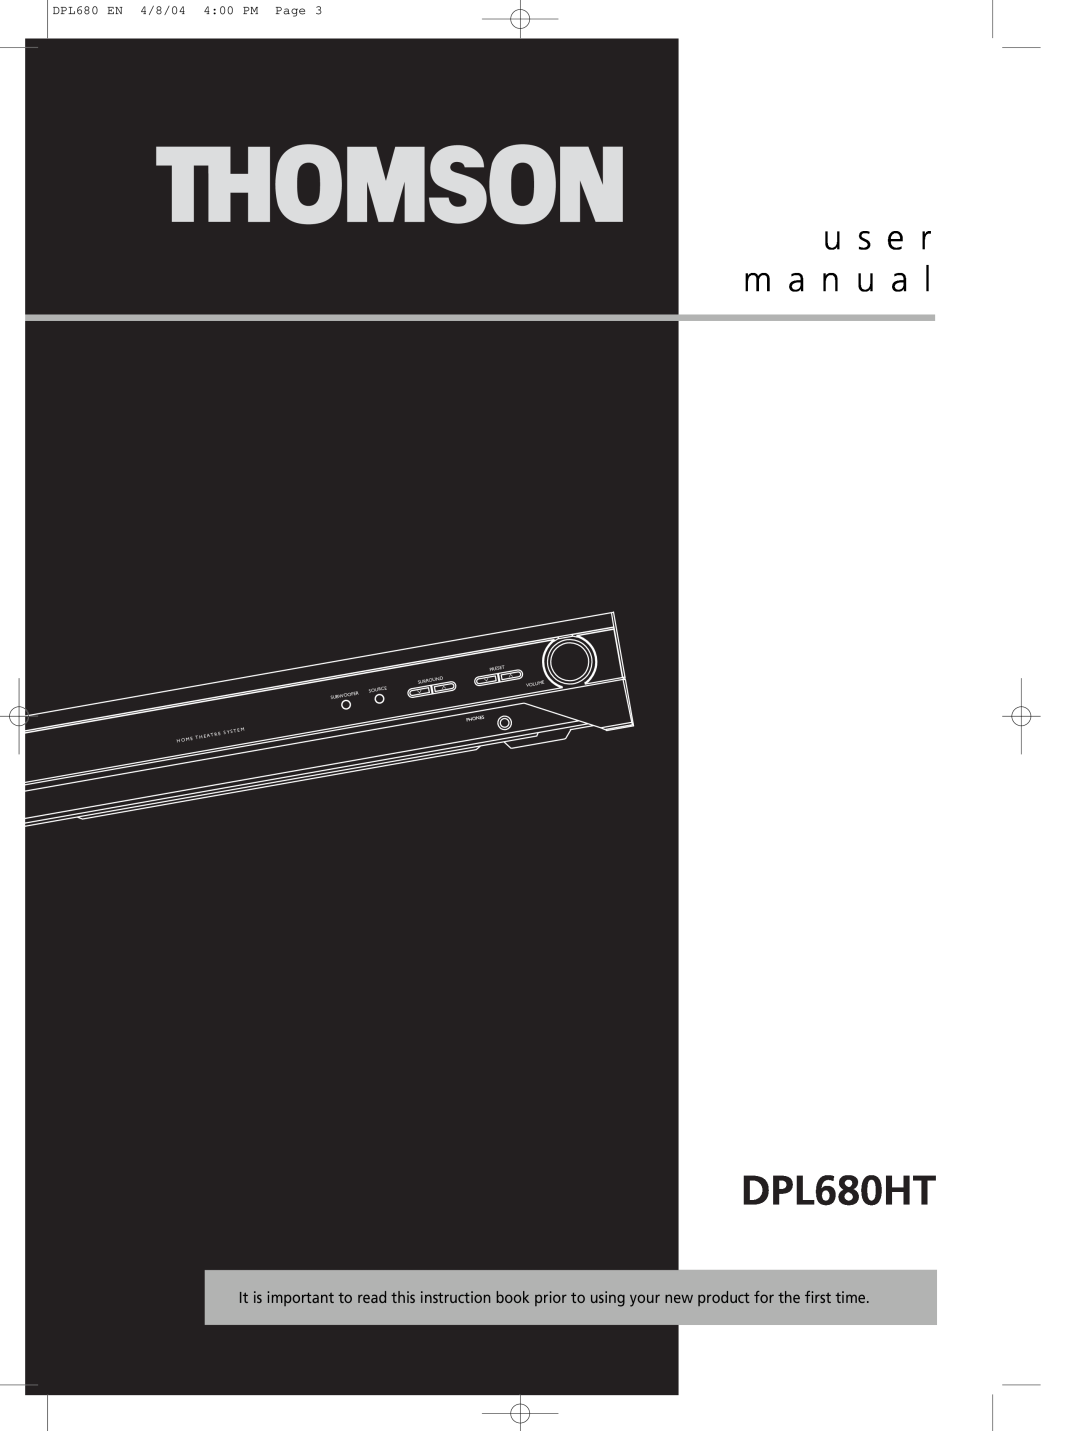 Technicolor - Thomson DPL680HT, u s e r m a n u a l, DPL680 EN 4/8/04 4 00 PM Page, Preset, Surround, Source, Subwoofer 